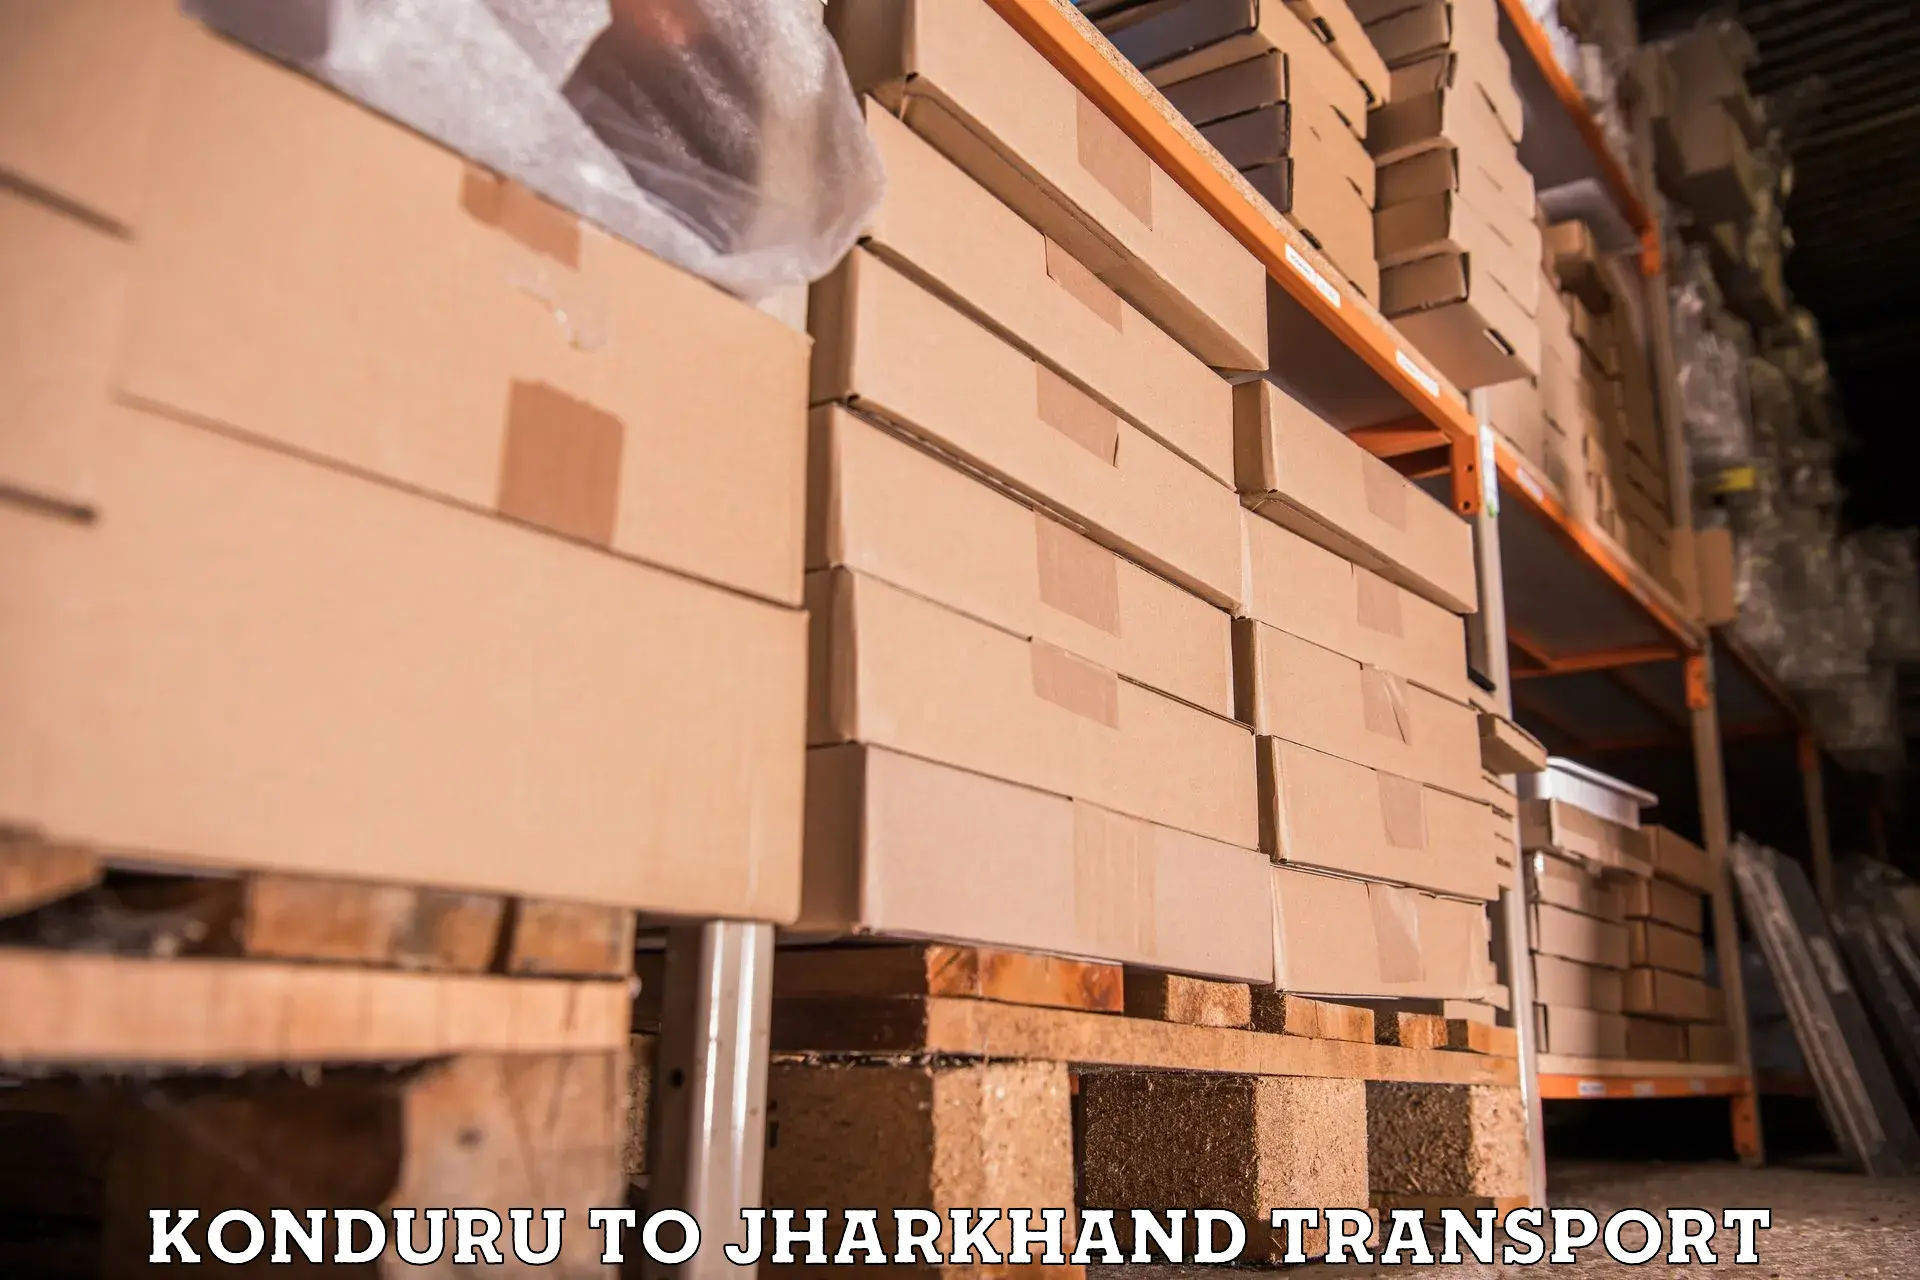 Cargo transport services in Konduru to Dhanbad